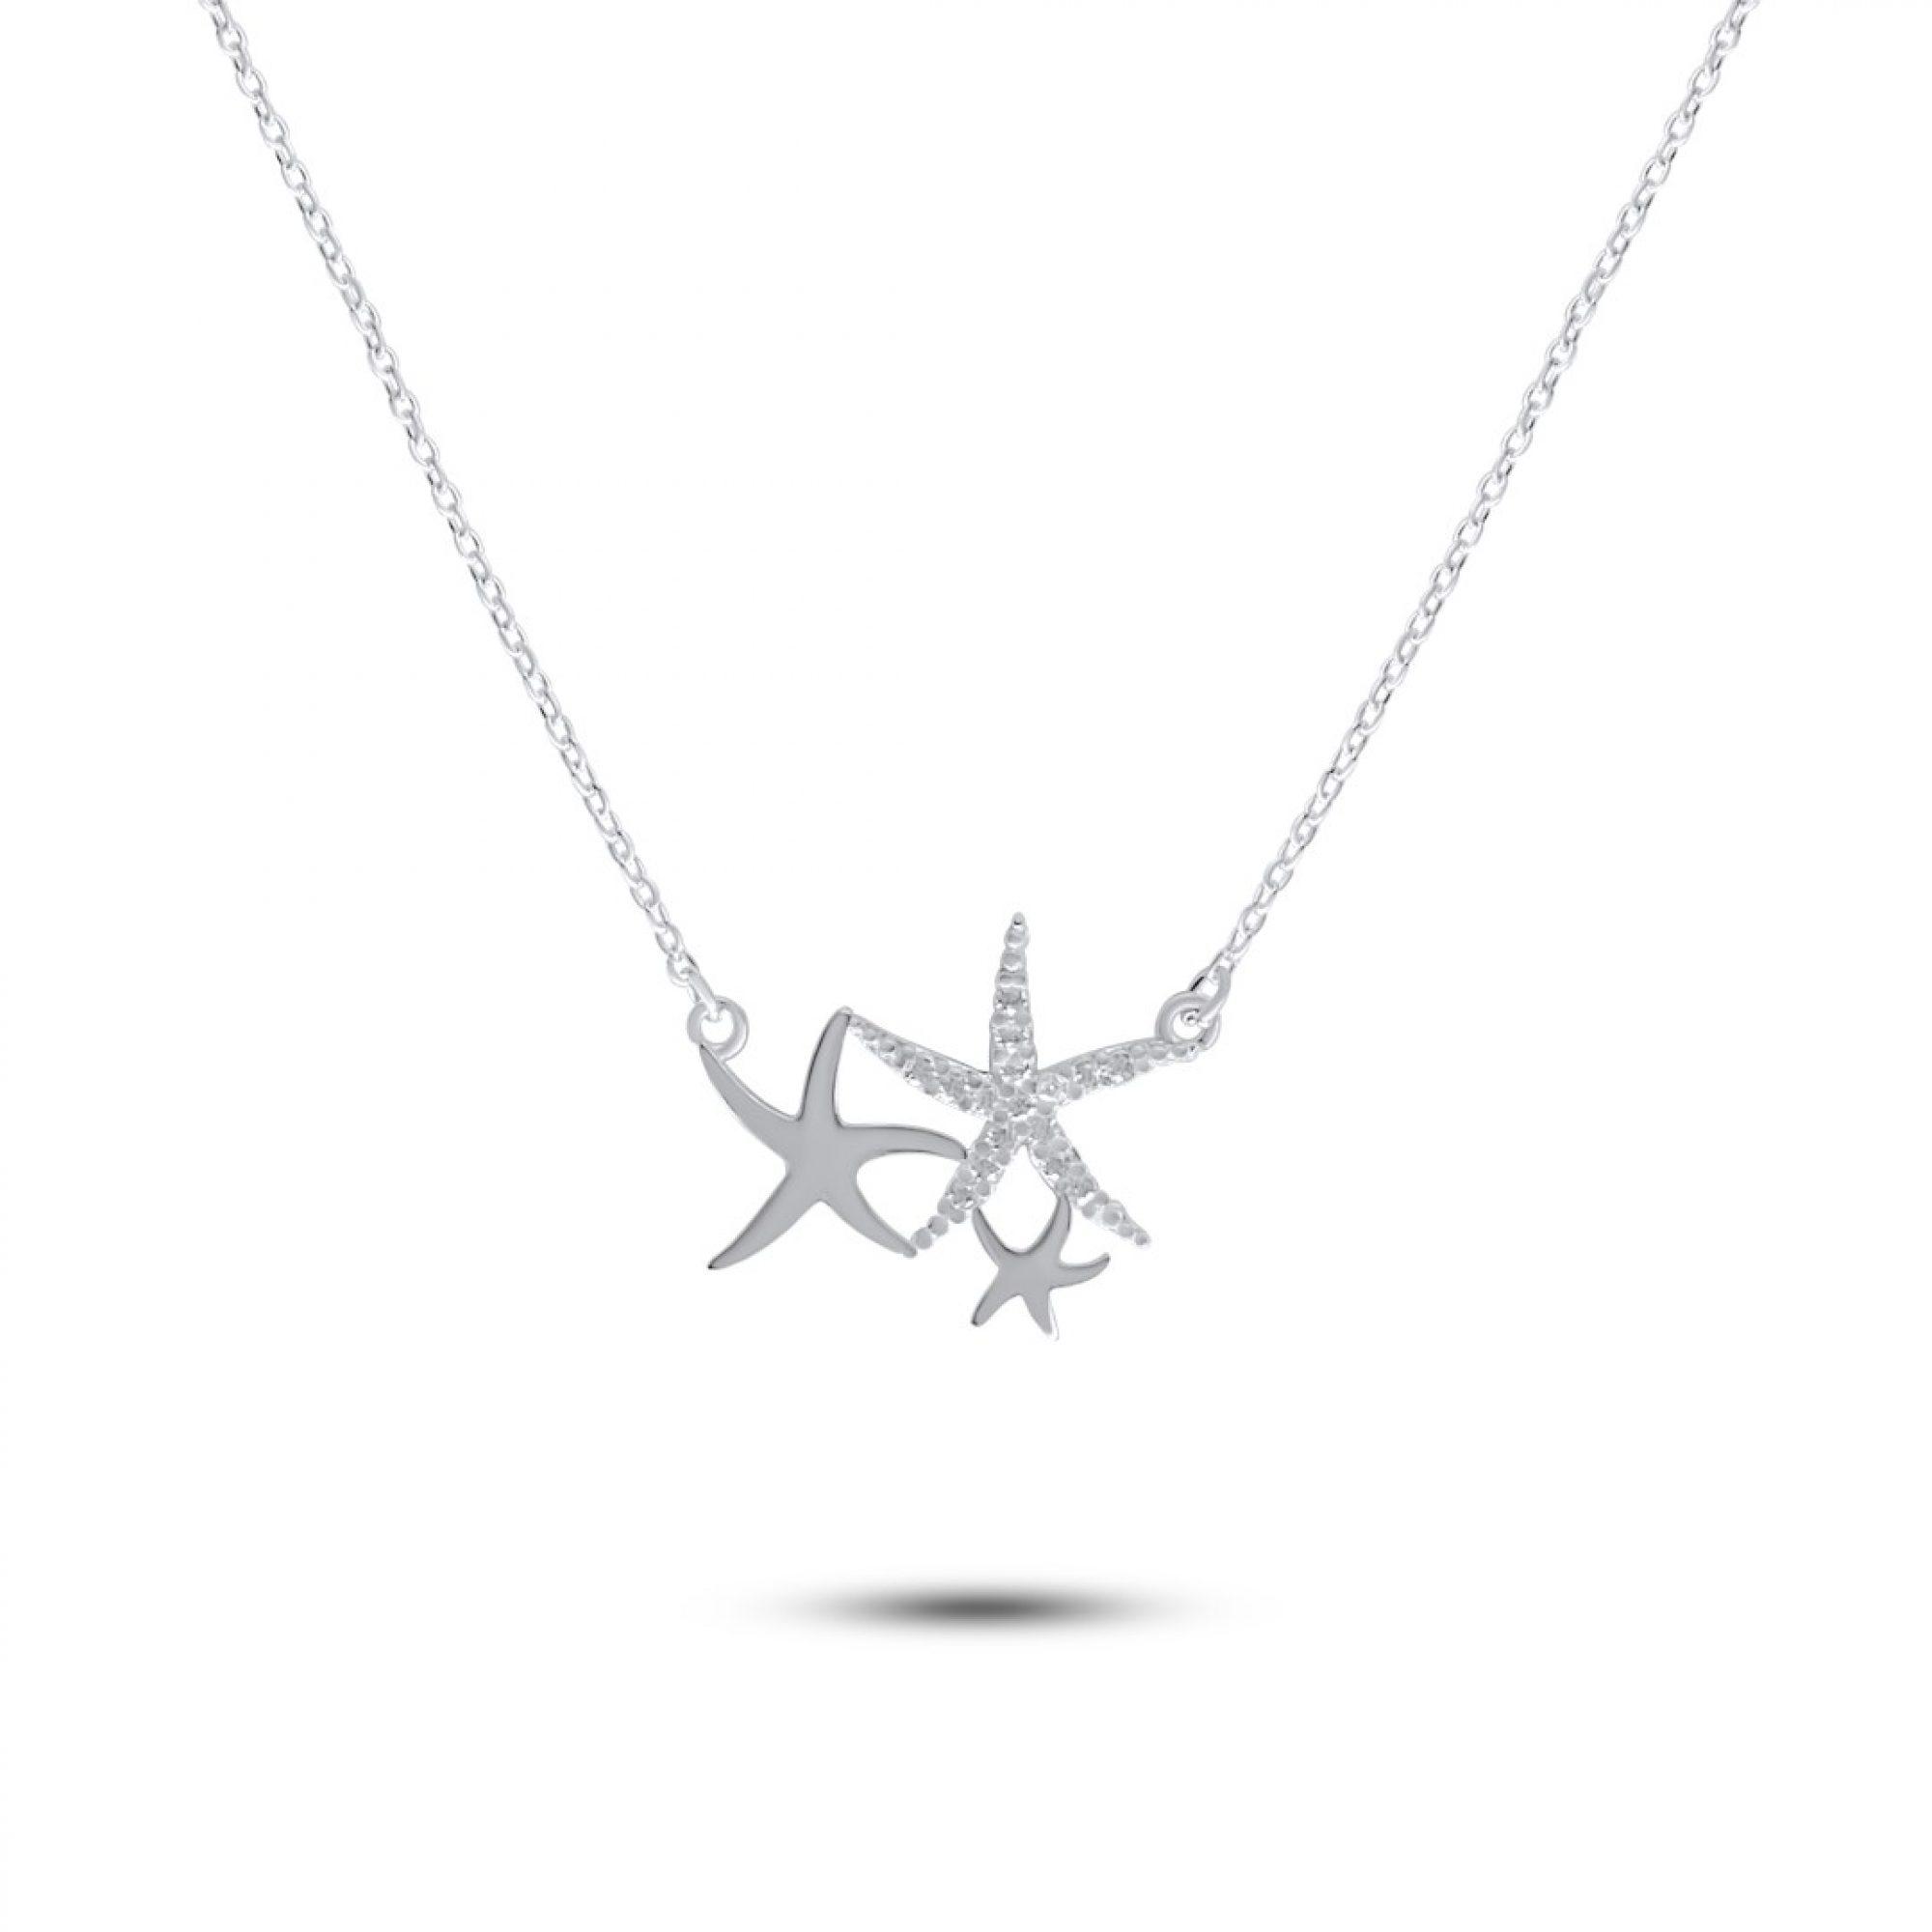 Starfish necklace with zircon stones